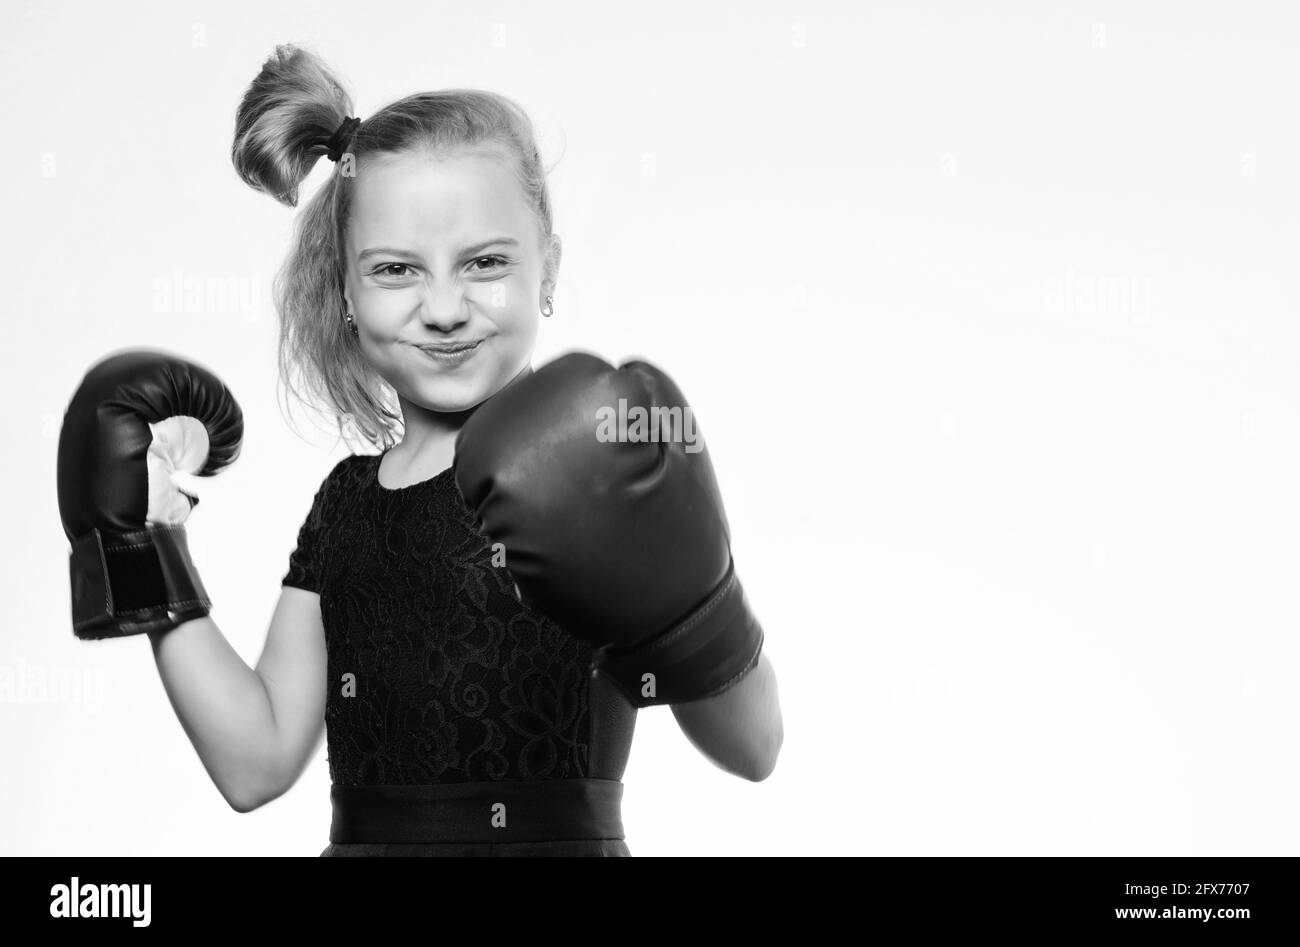 Baby boxing gloves fotografías e imágenes de alta resolución - Página 7 -  Alamy